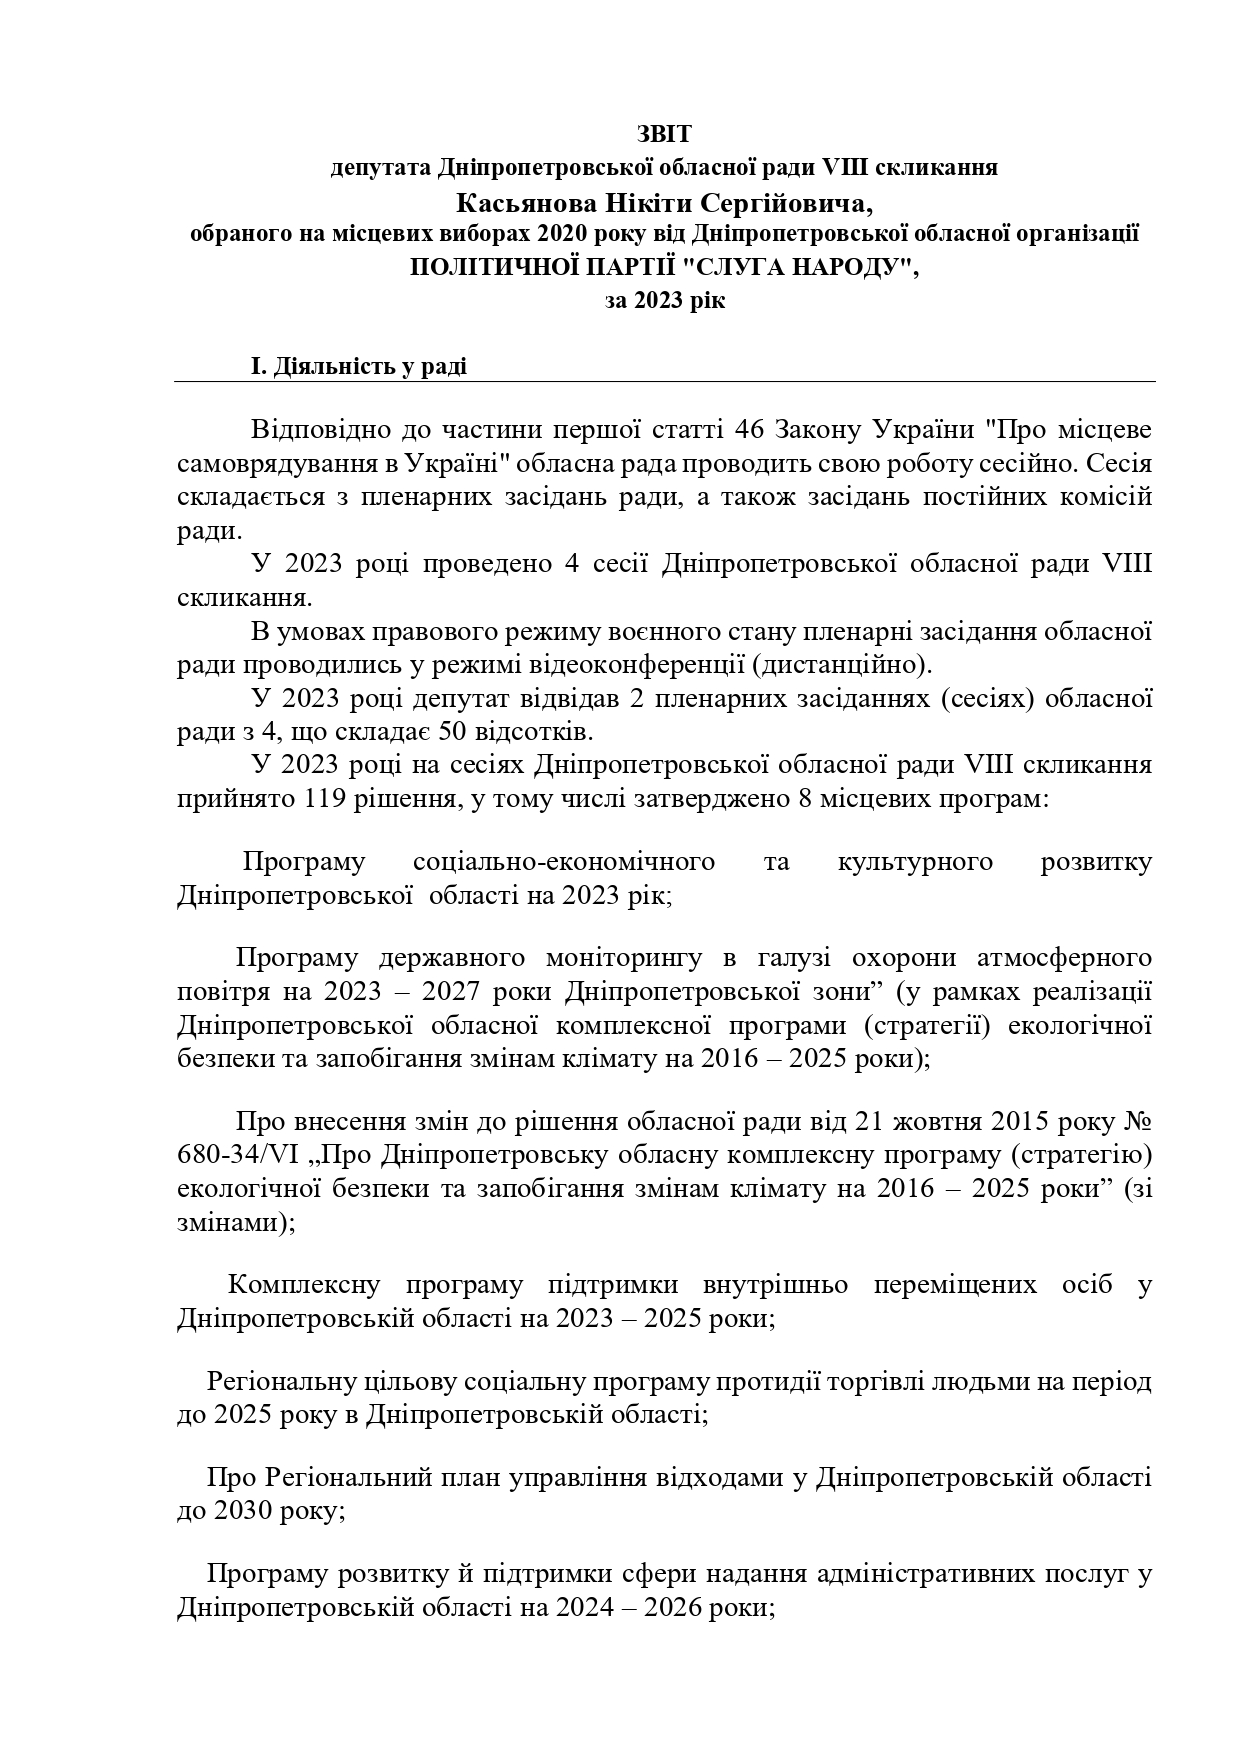 ЗВіт Касьянов 2023_page-0001